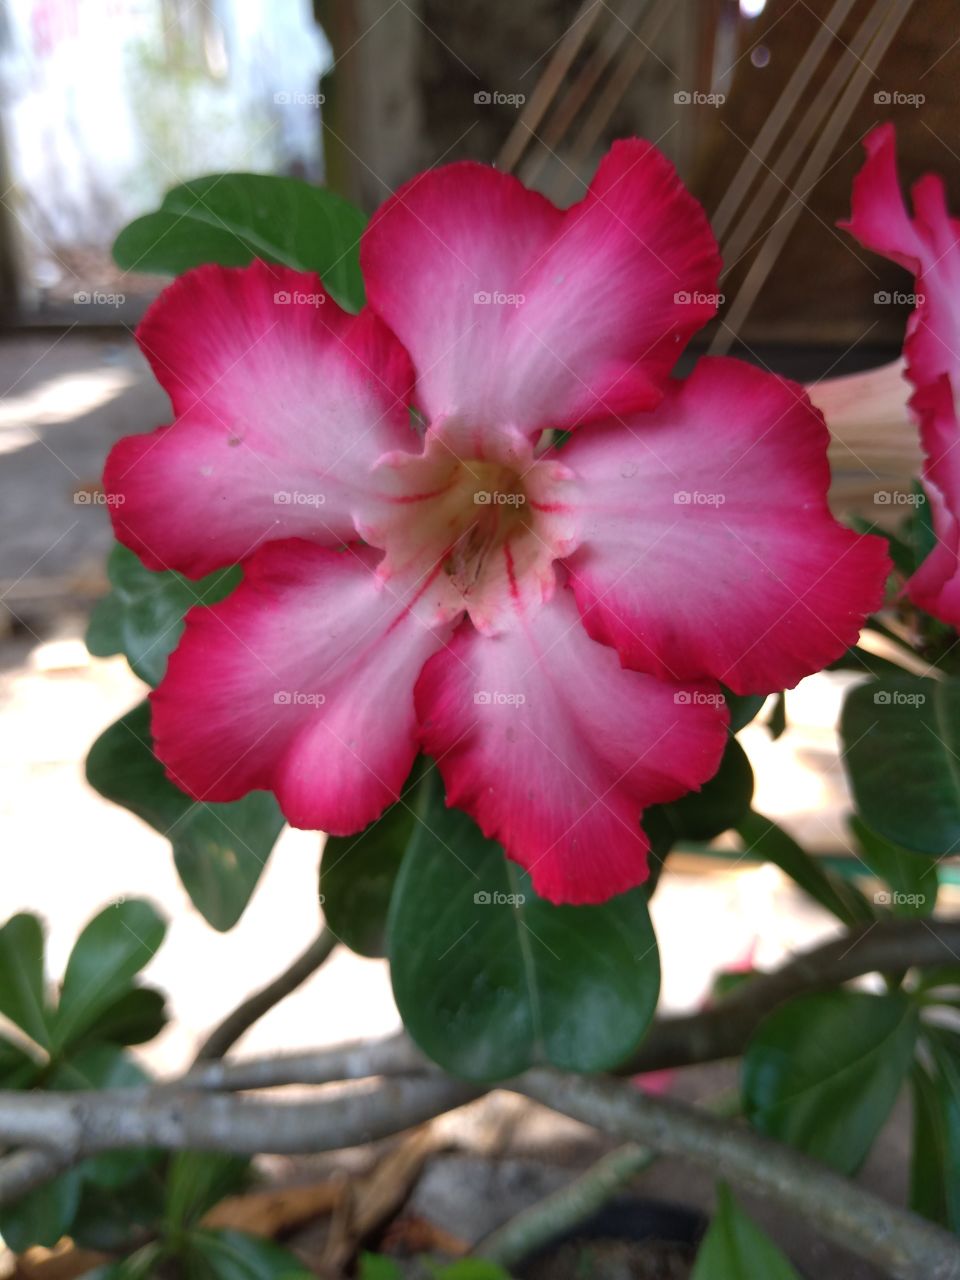 flower pink
#flower #rose #pink